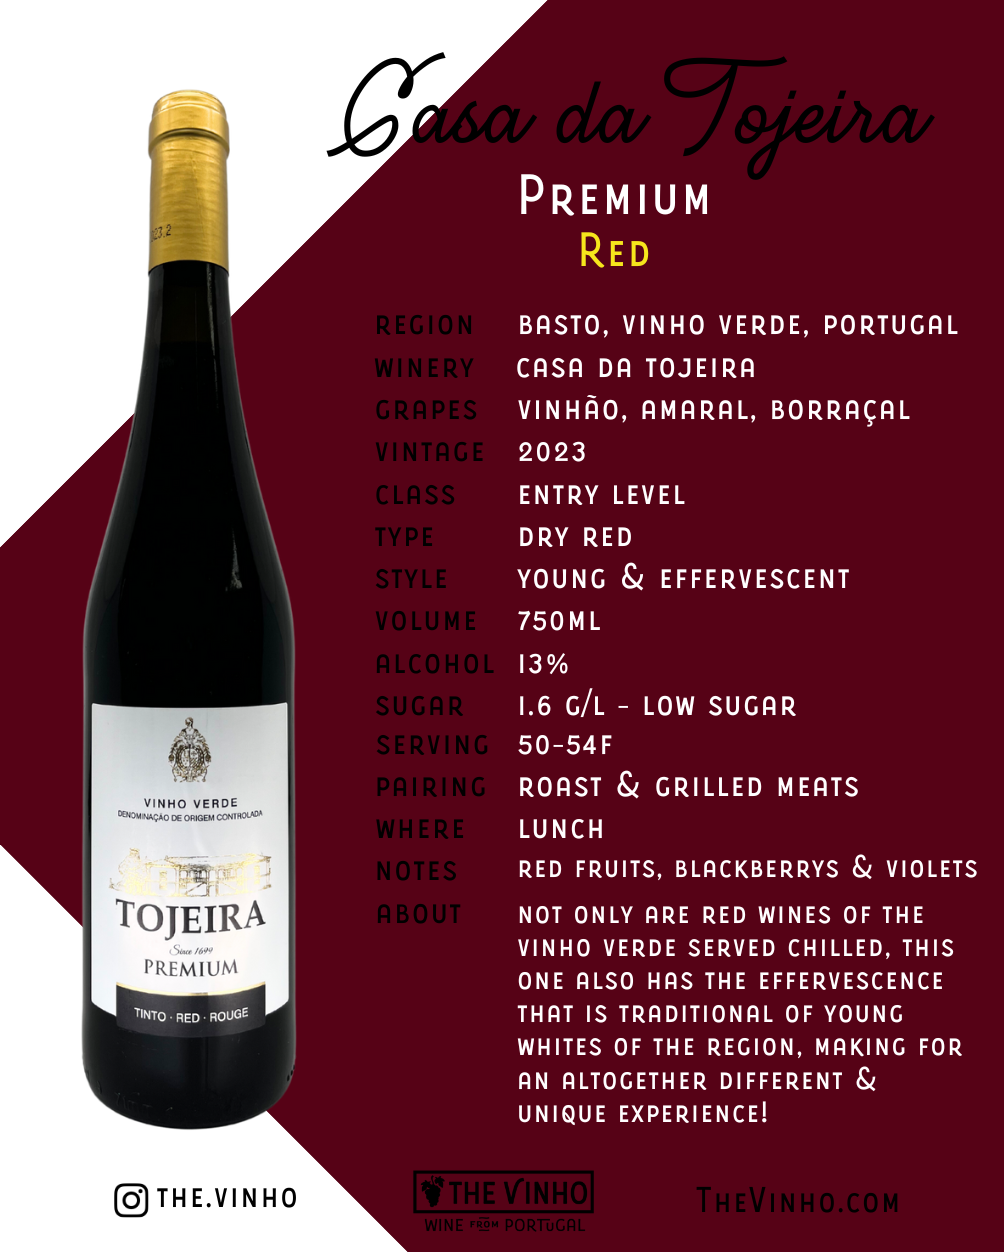  Casa da Tojeira 'Tojeira' Premium Red Blend 2023 - The Vinho